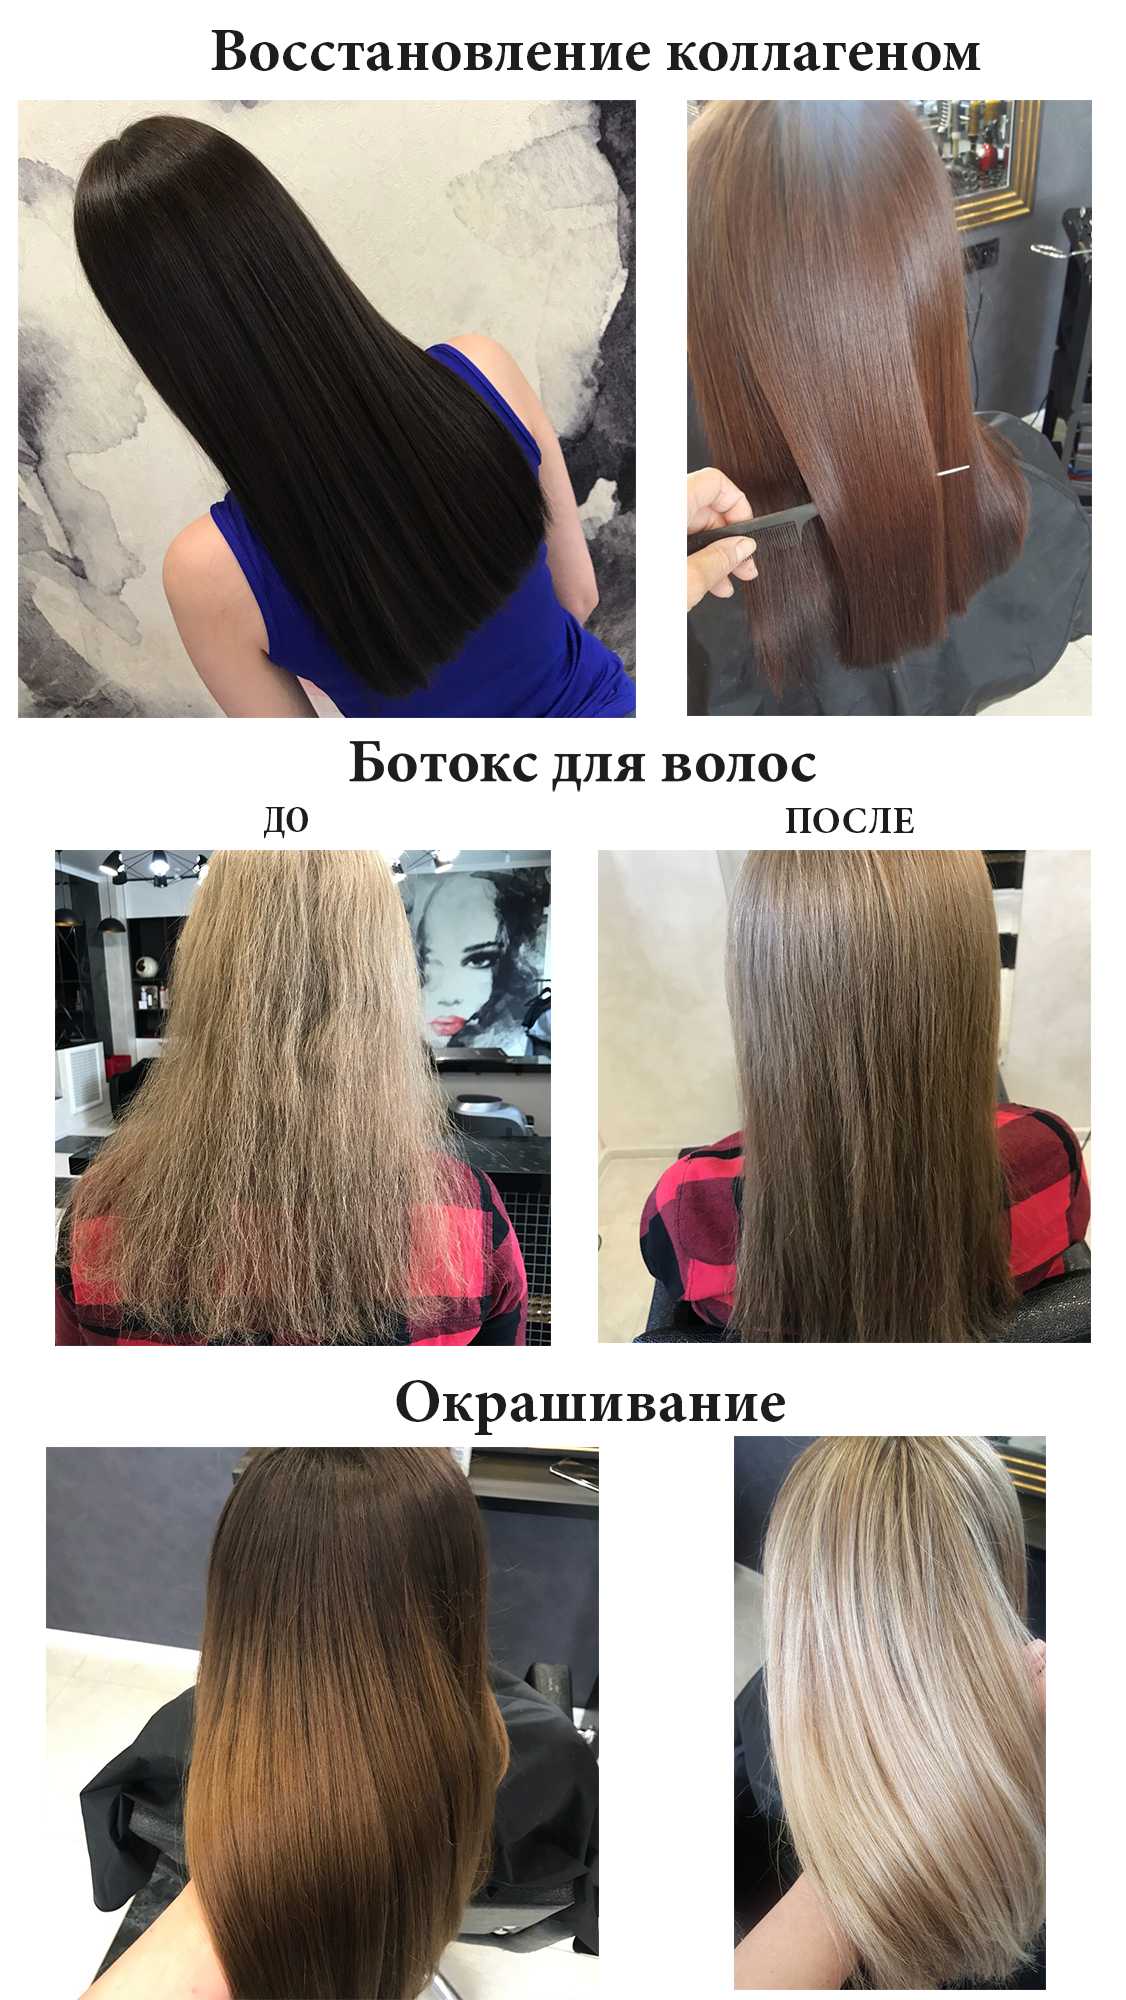 Коллагеновое восстановление волос - топ-6 популярных средств